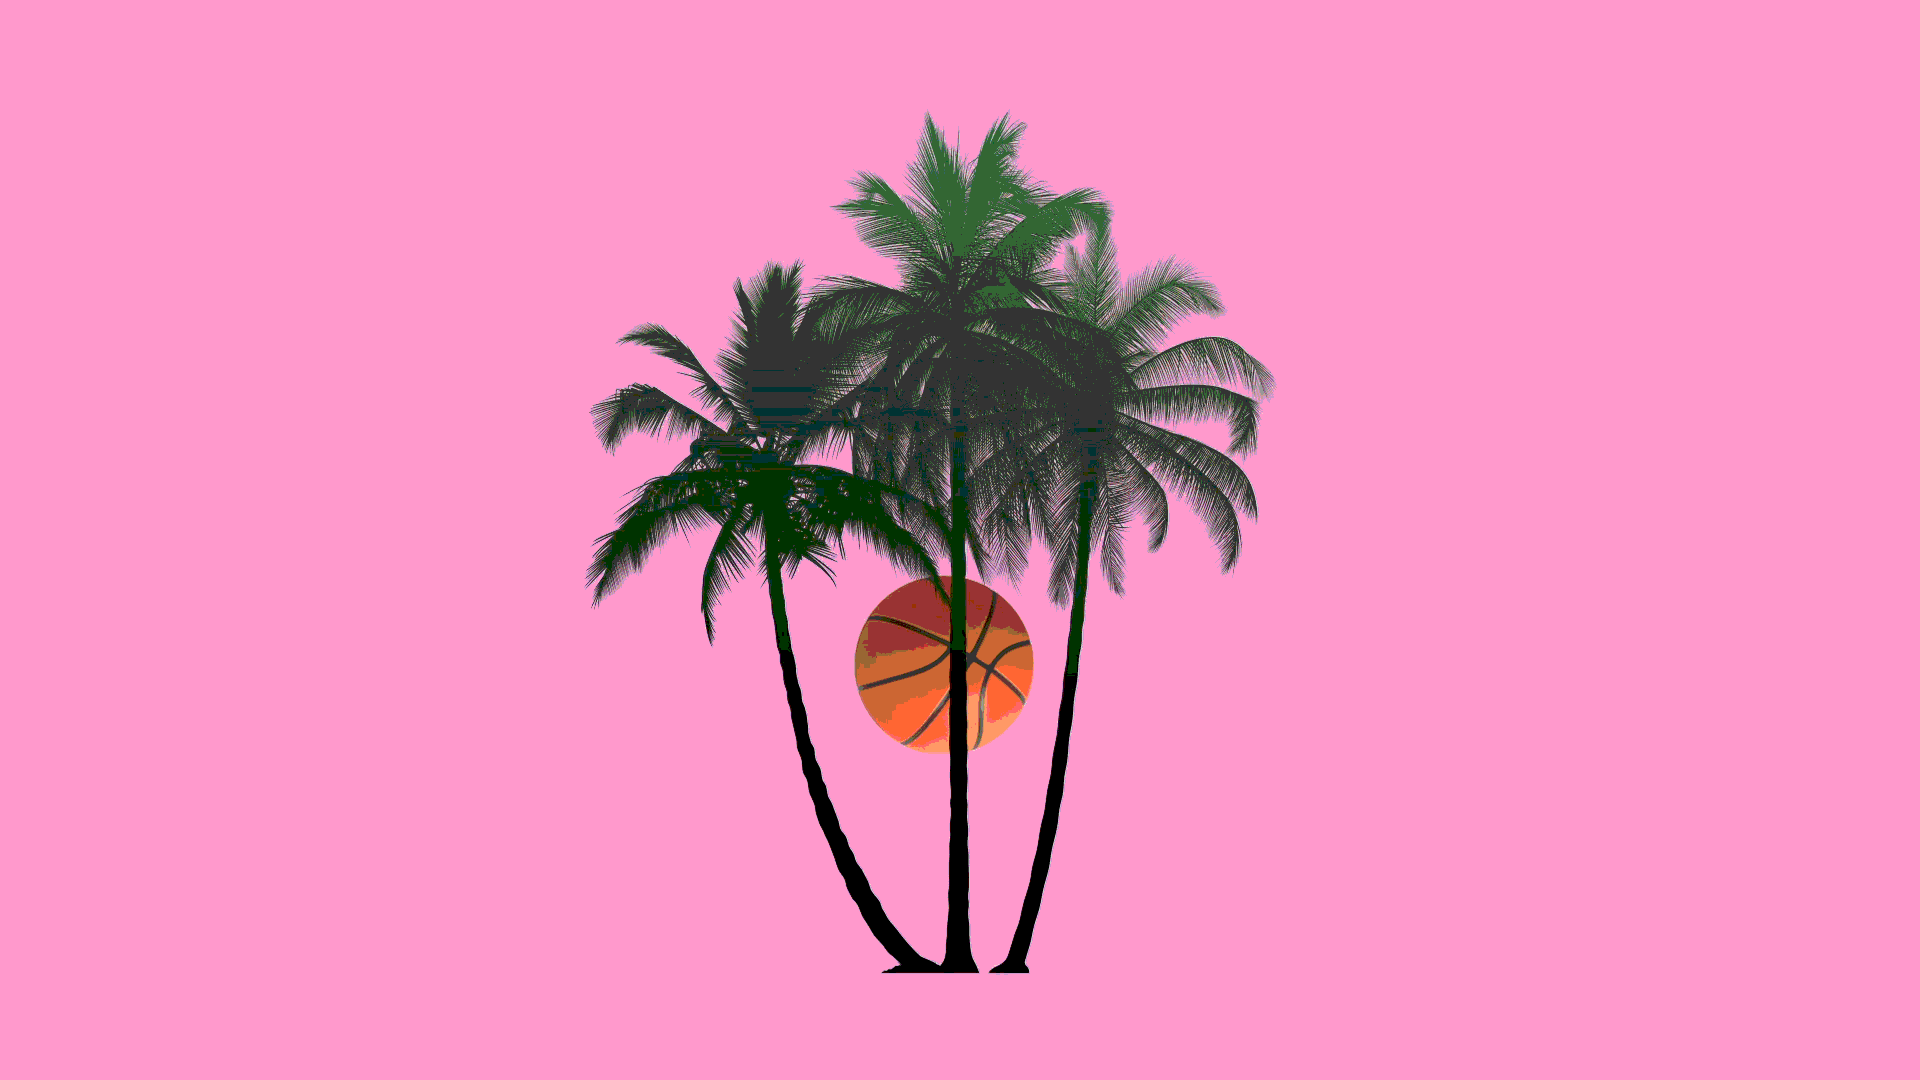 Basketball orbiting around a palm tree